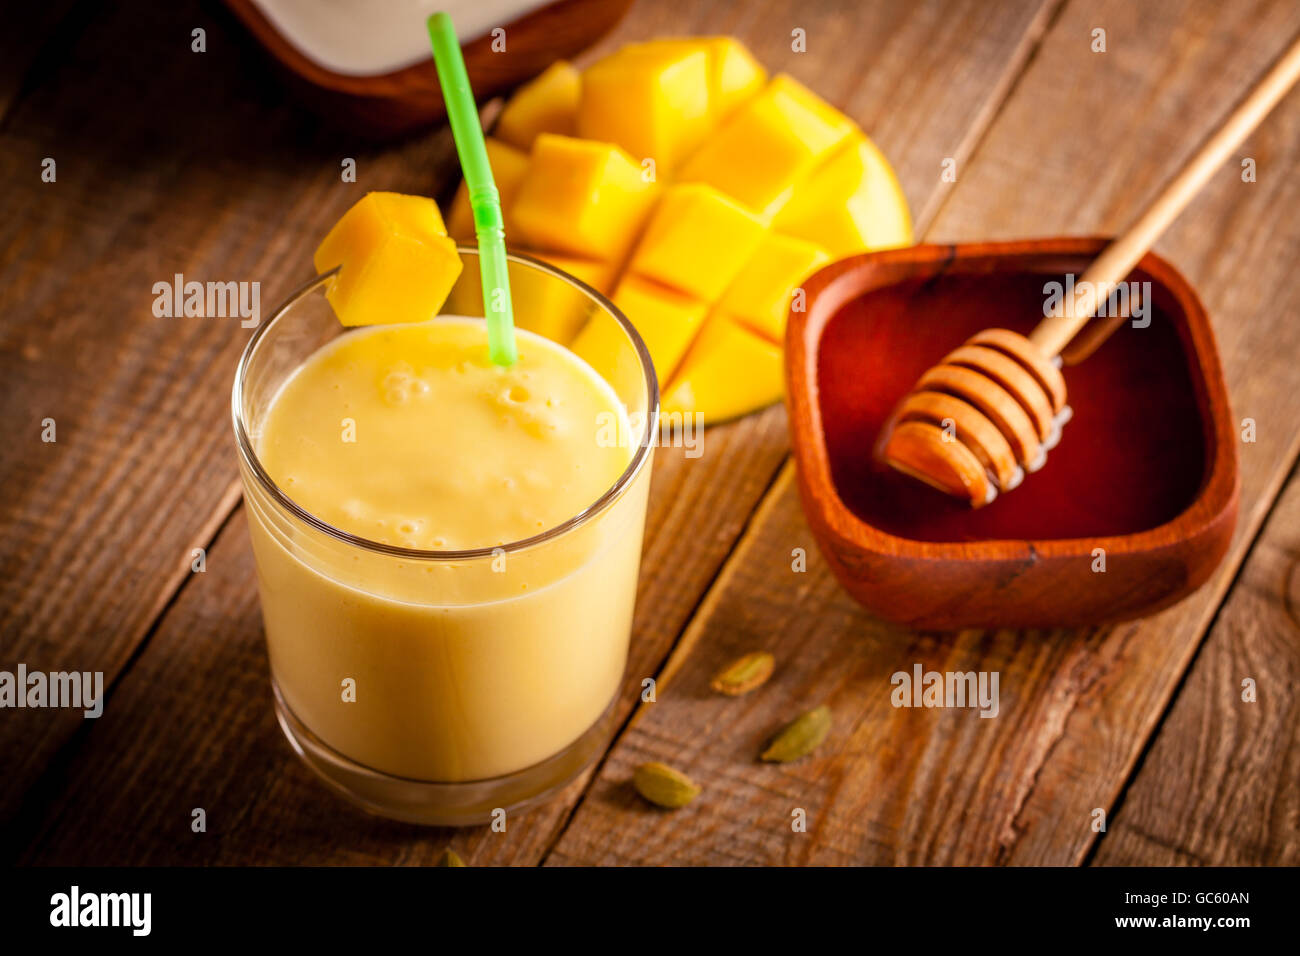 Bicchiere di mango lassi, Indiano bevanda a base di yogurt mescolato con mango e miele, aromatizzata con il cardamomo. Foto Stock